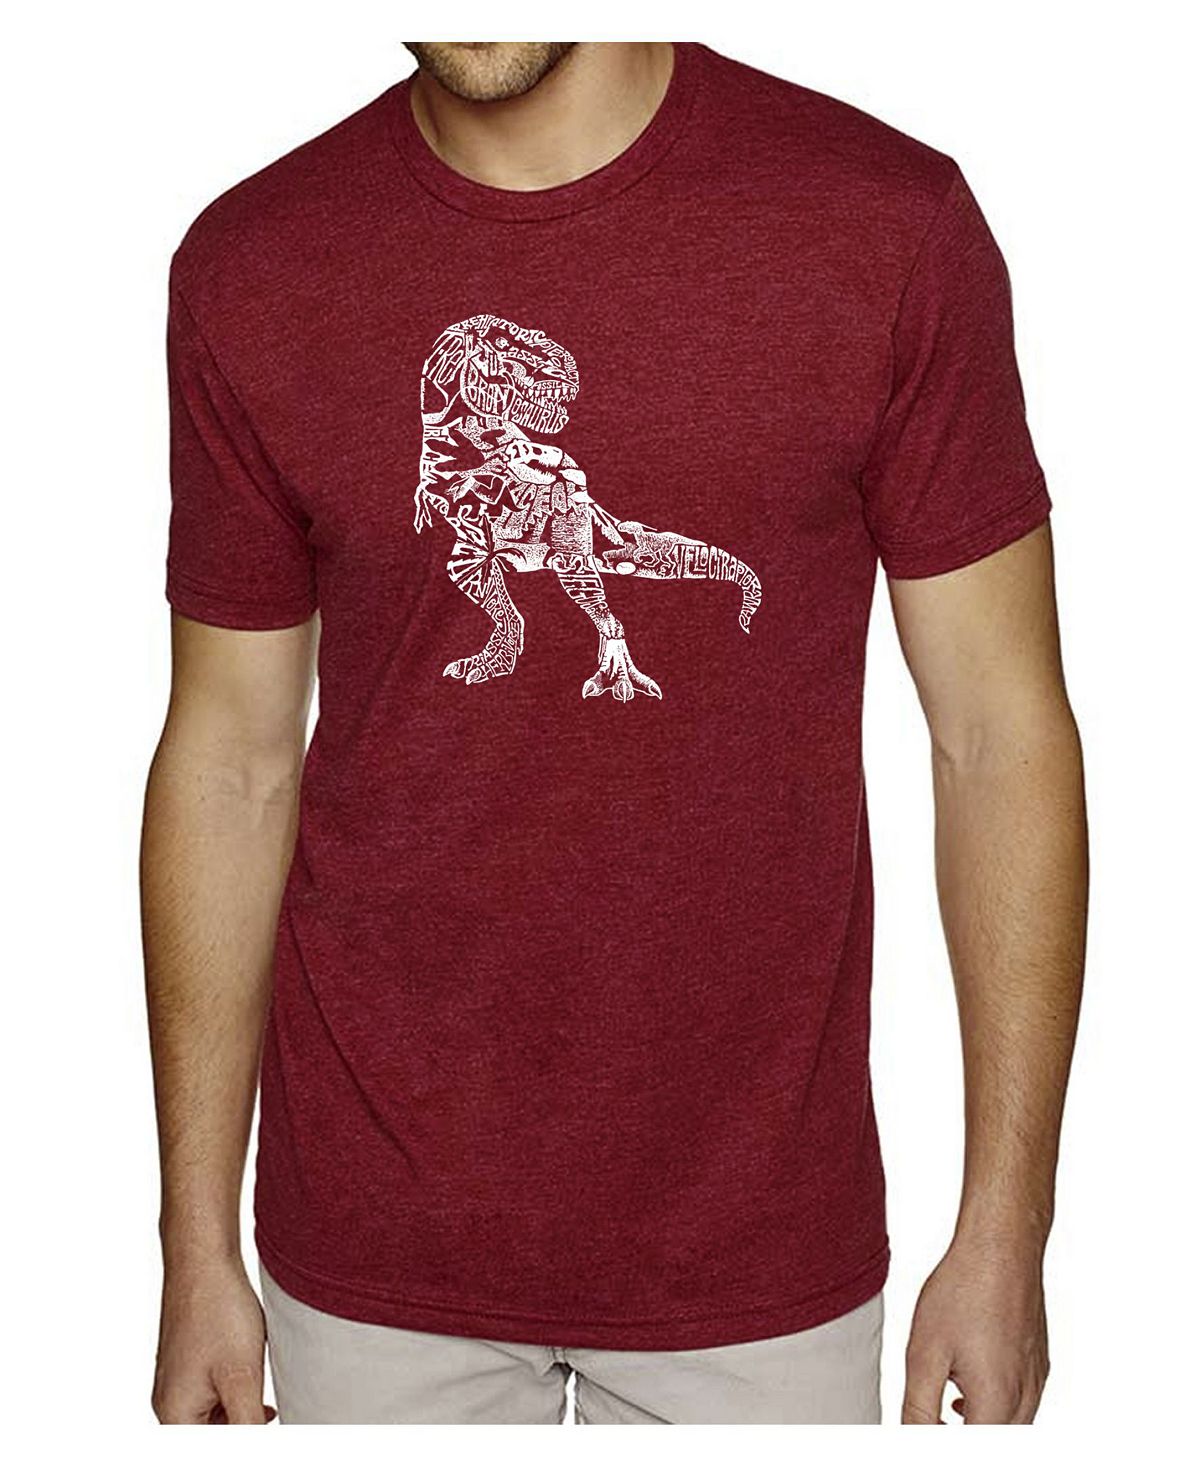 Мужская футболка premium blend word art - динозавр LA Pop Art набор фигурок мир юрского периода t rex giganotosaurus